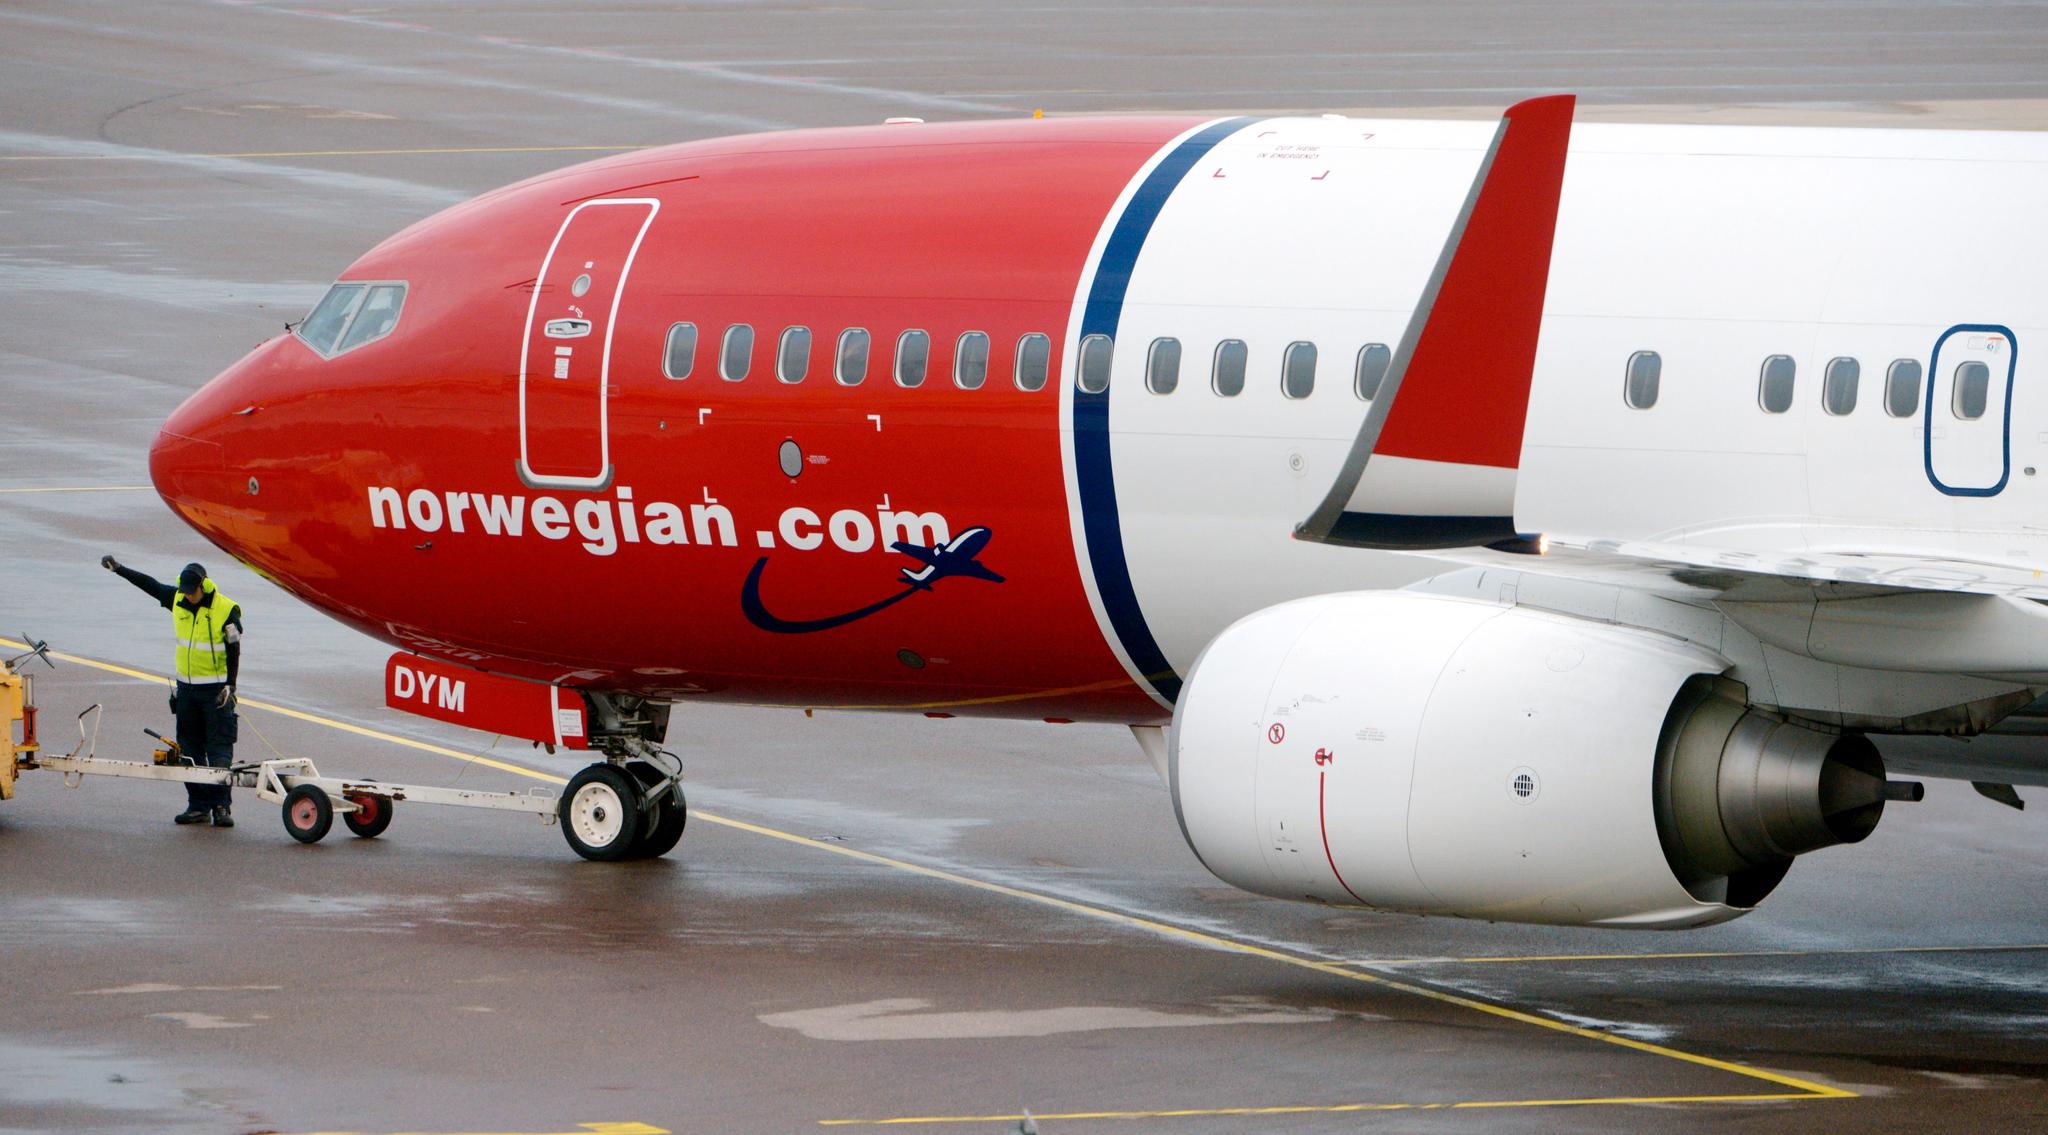 Dårlig vær og kraftig forsinkelse for Norwegian-fly fra Gatwick til Gardermoen. Passasjer Øystein Sandmo er lite fornøyd med flyselskapet.  